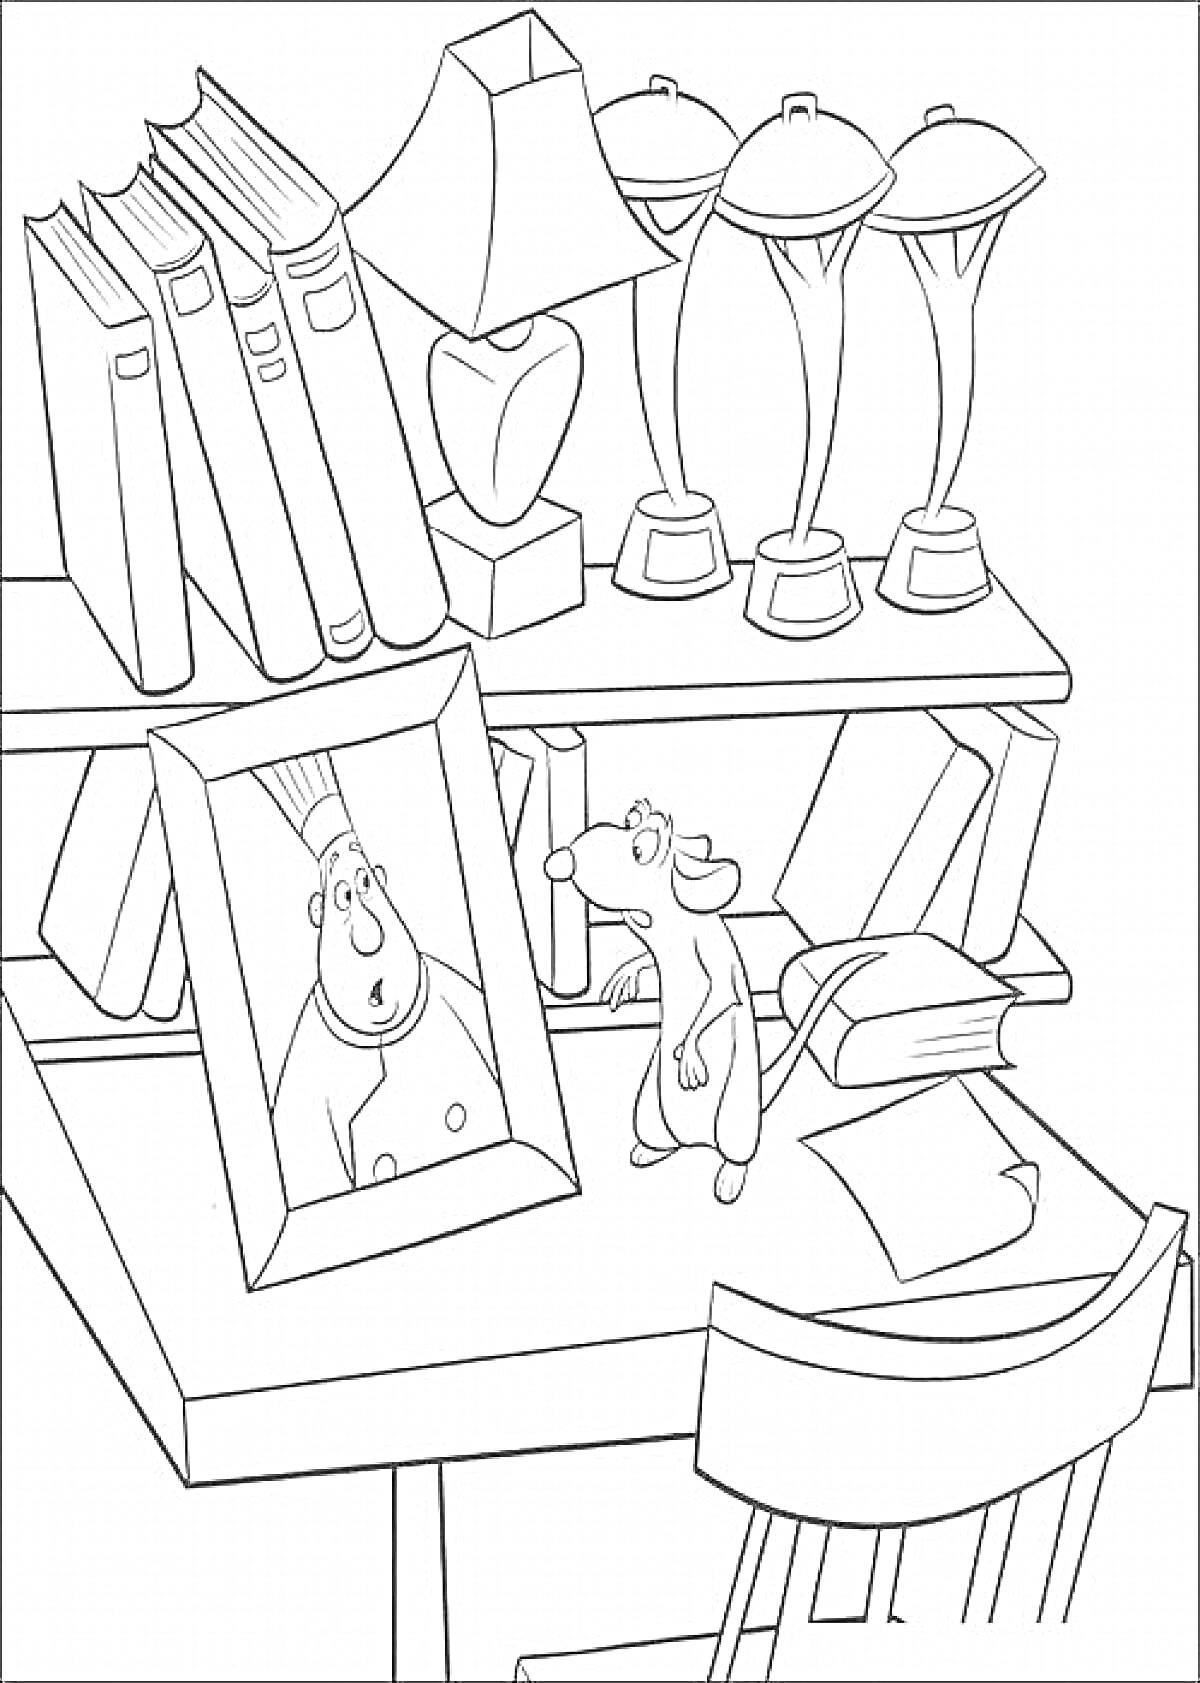 Раскраска Стол с полками, на котором находятся книги, настольная лампа, фотография человека, фигурка мыши, три настольные лампы, стул